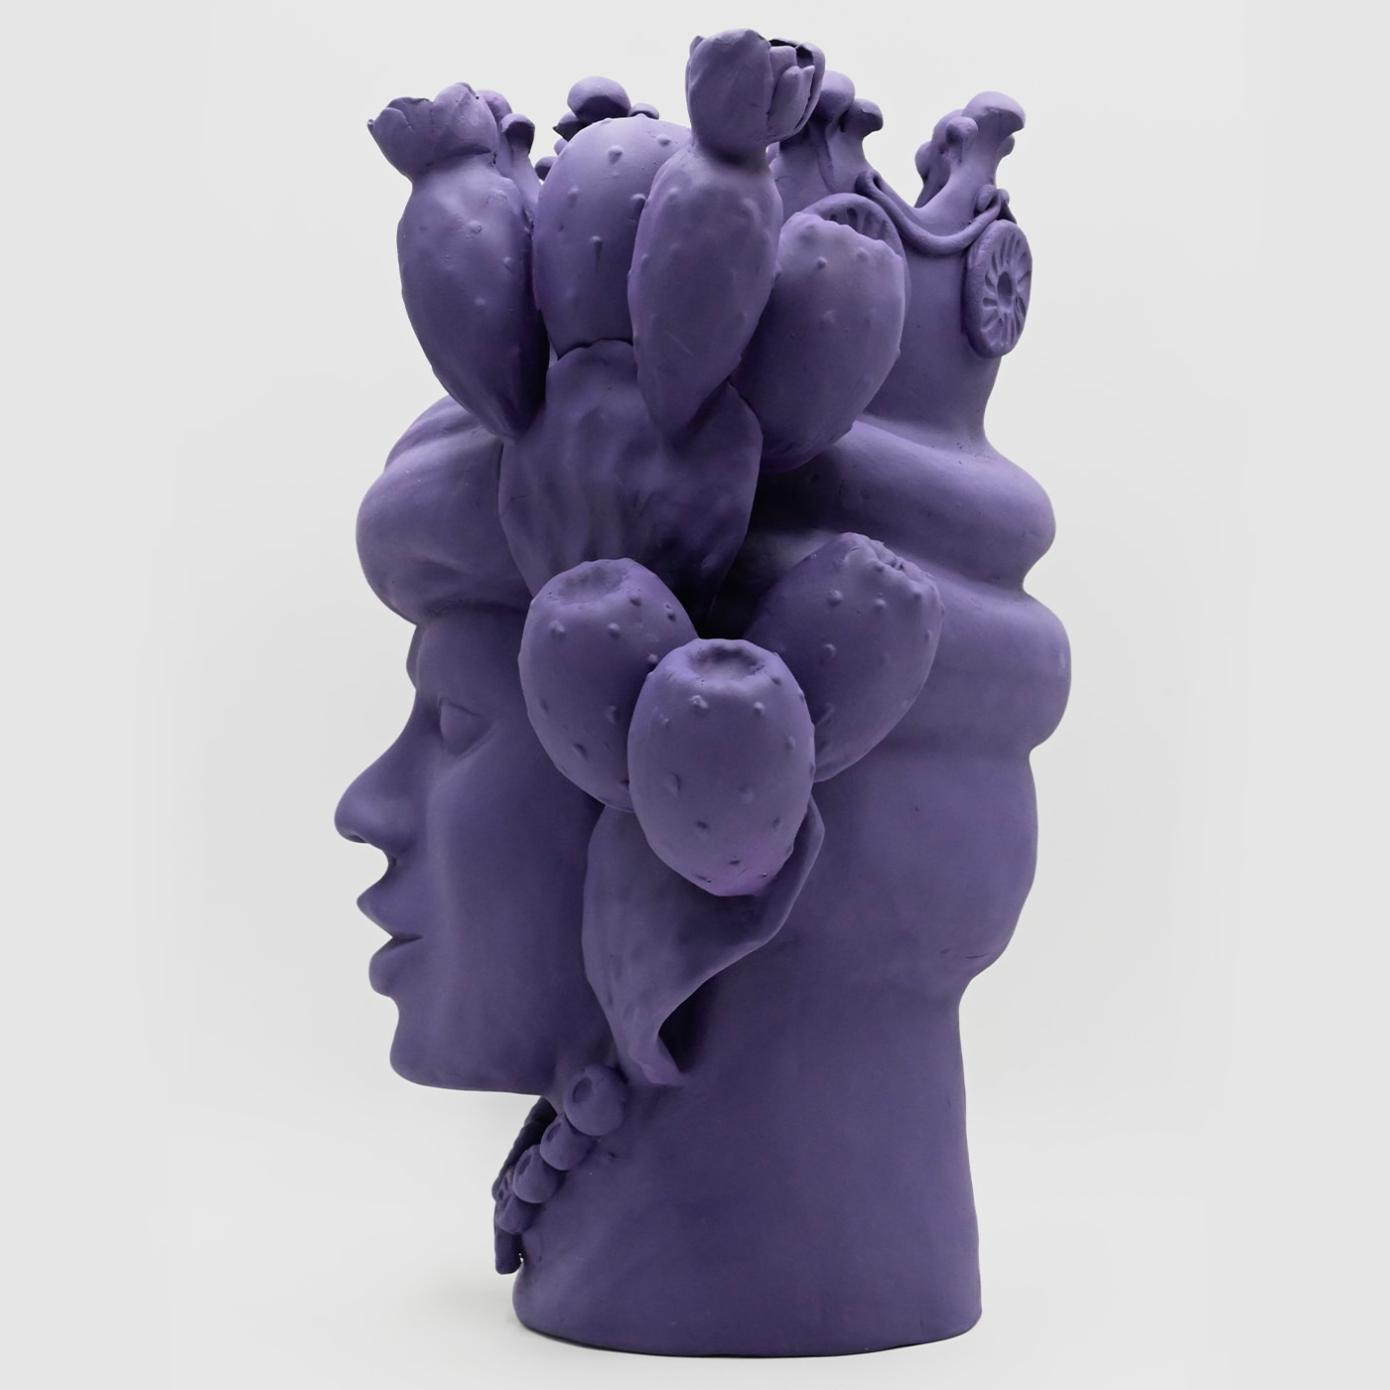 Violet Italian Moor's Sculpture